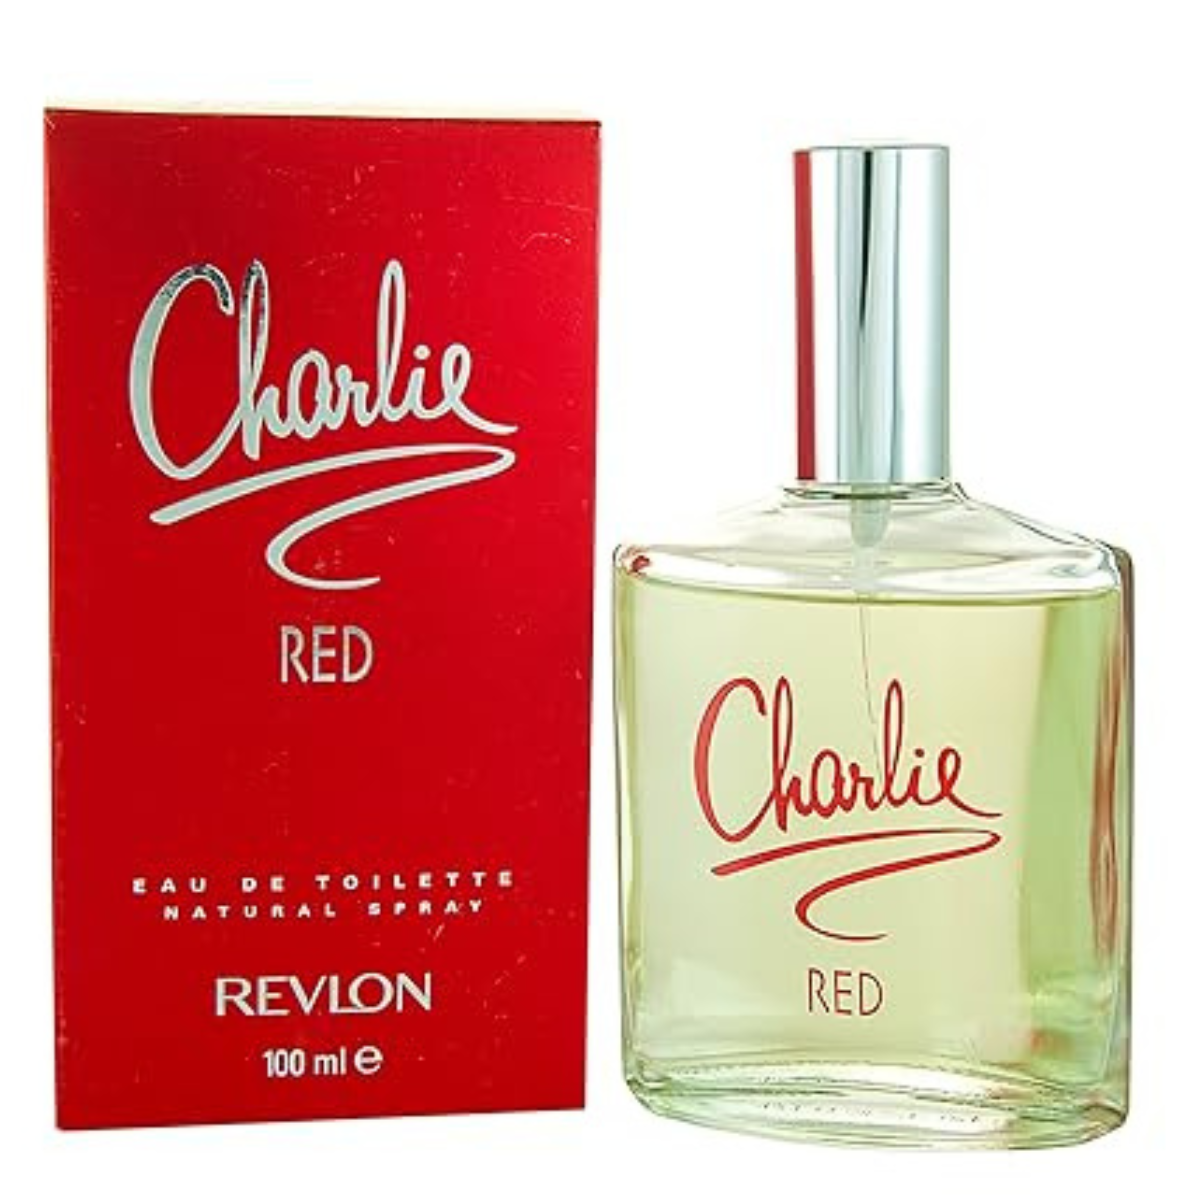 Revlon Charlie Red 100 ml EDT for women perfume-1